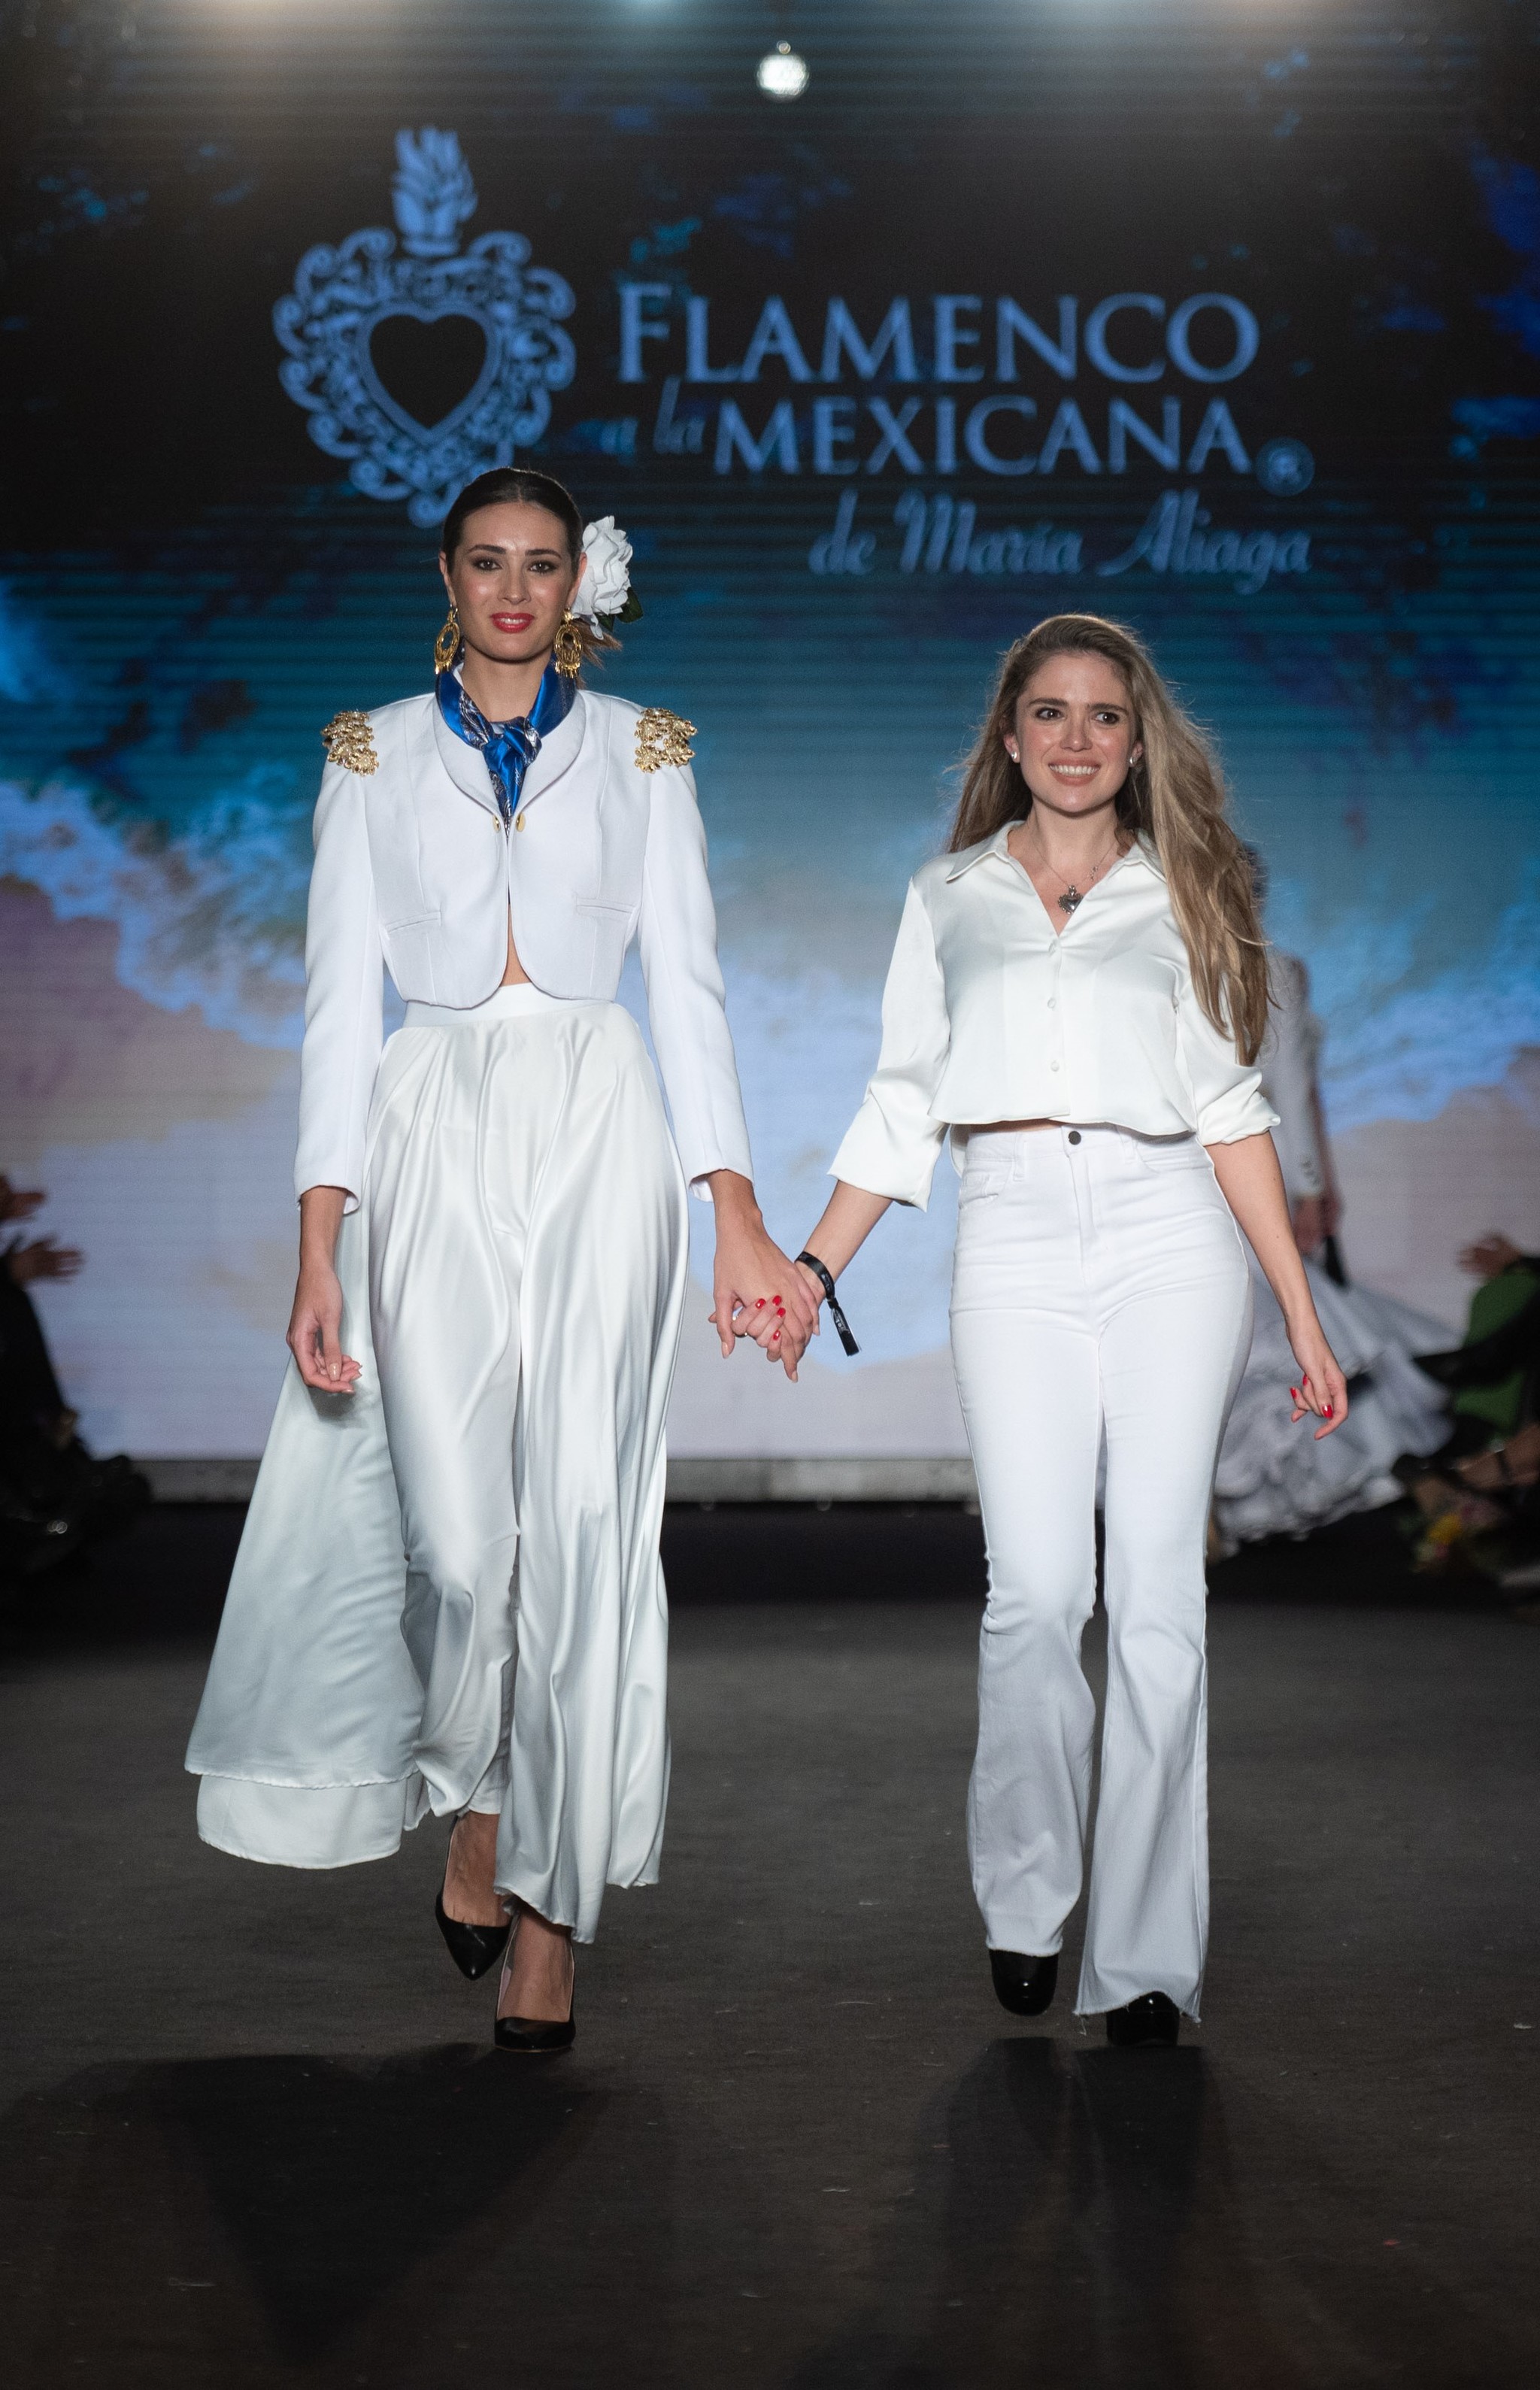 La bailaora y diseñadora María Aliaga con un diseño de su firma Flamenco a la Mexicana.